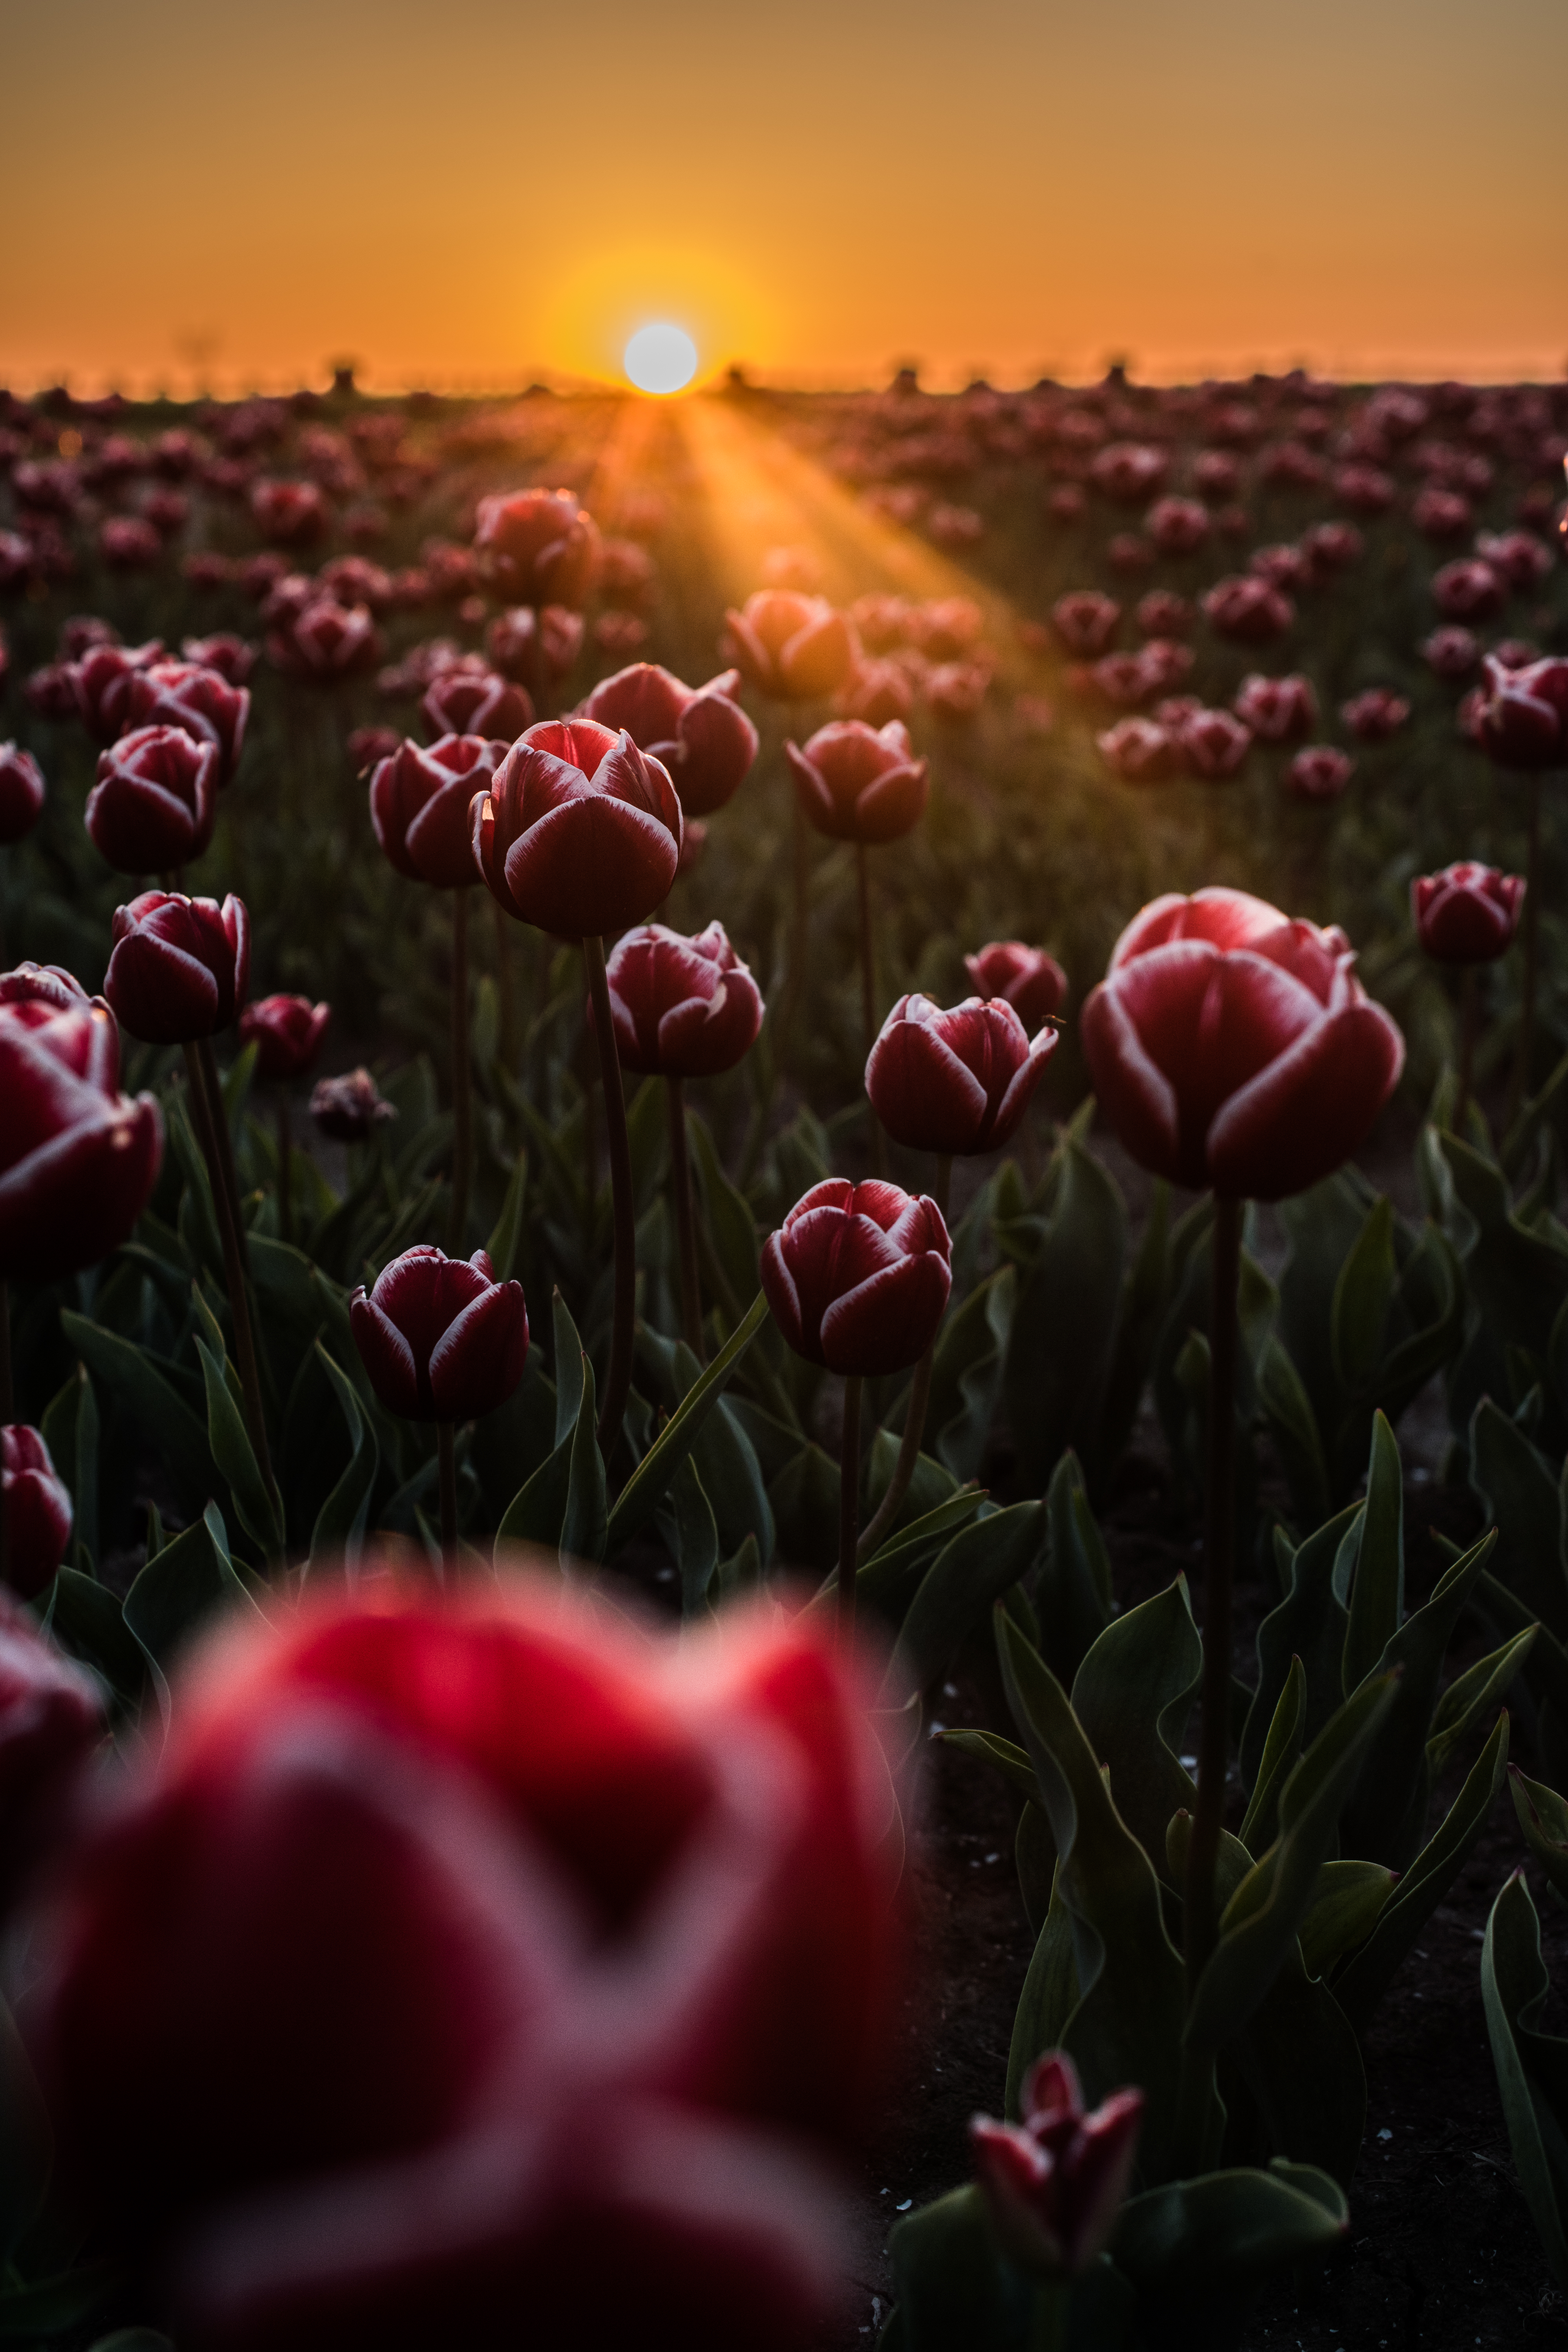 android tulips, flowers, horizon, field, sunlight